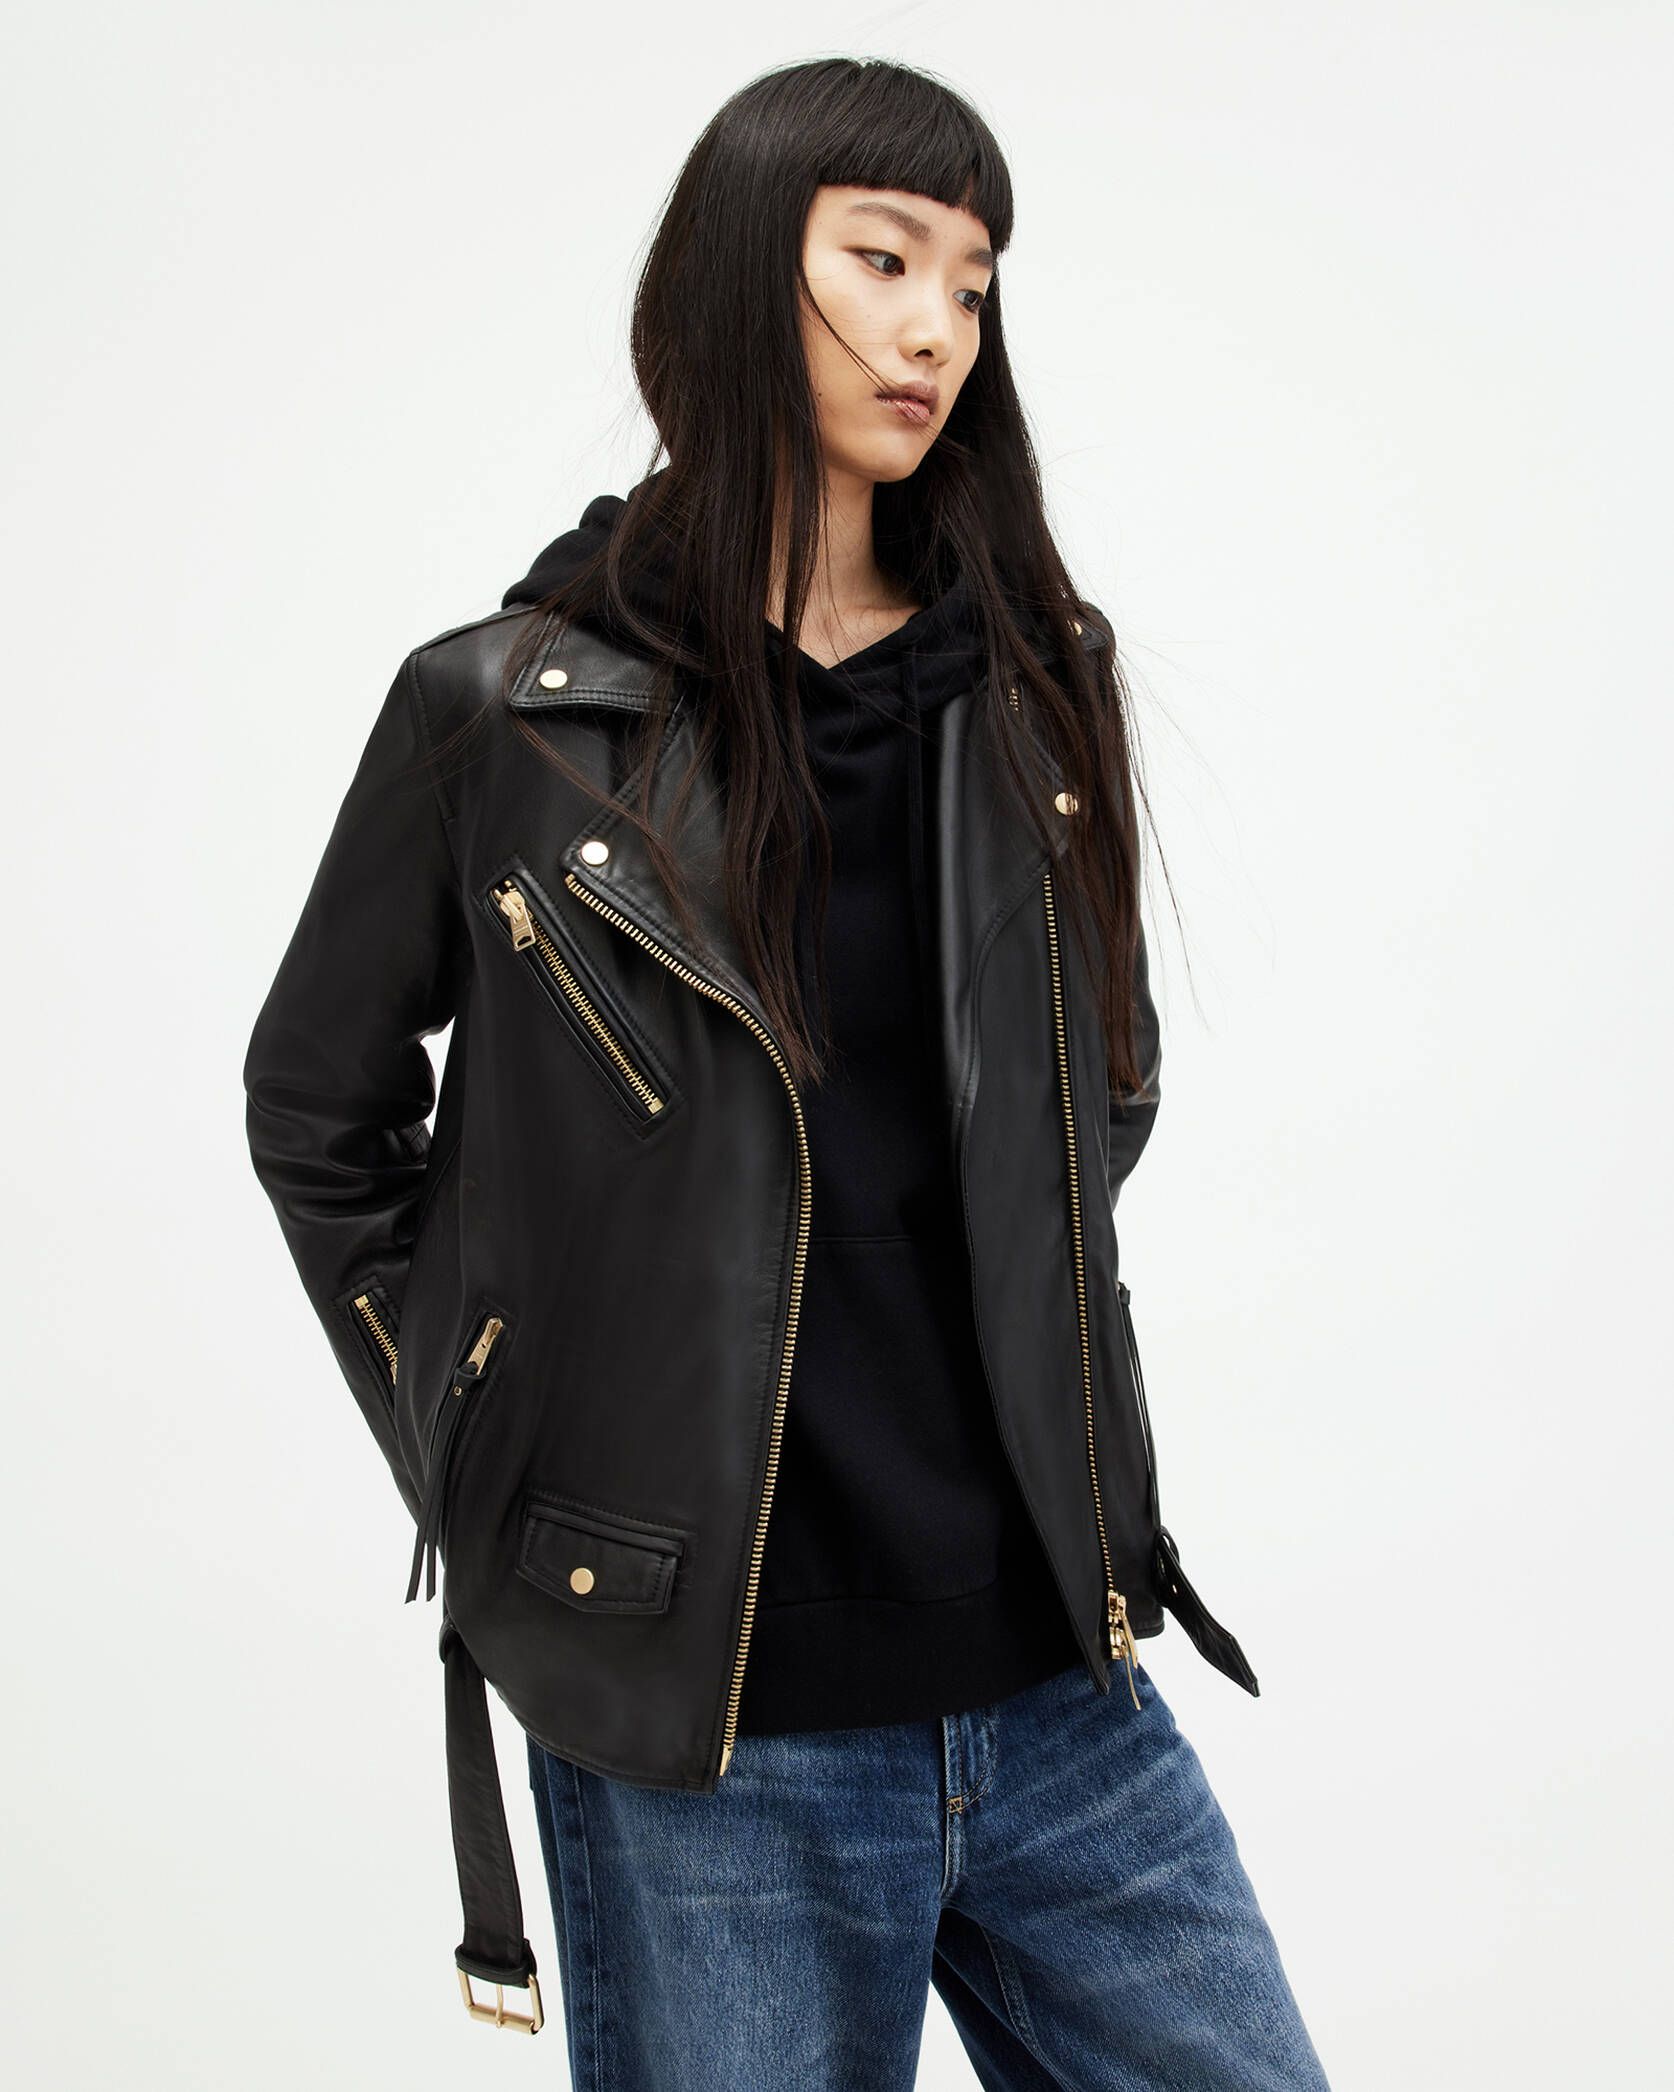 Biller Leather Oversized Biker Jacket BLACK/GOLD | ALLSAINTS | AllSaints UK